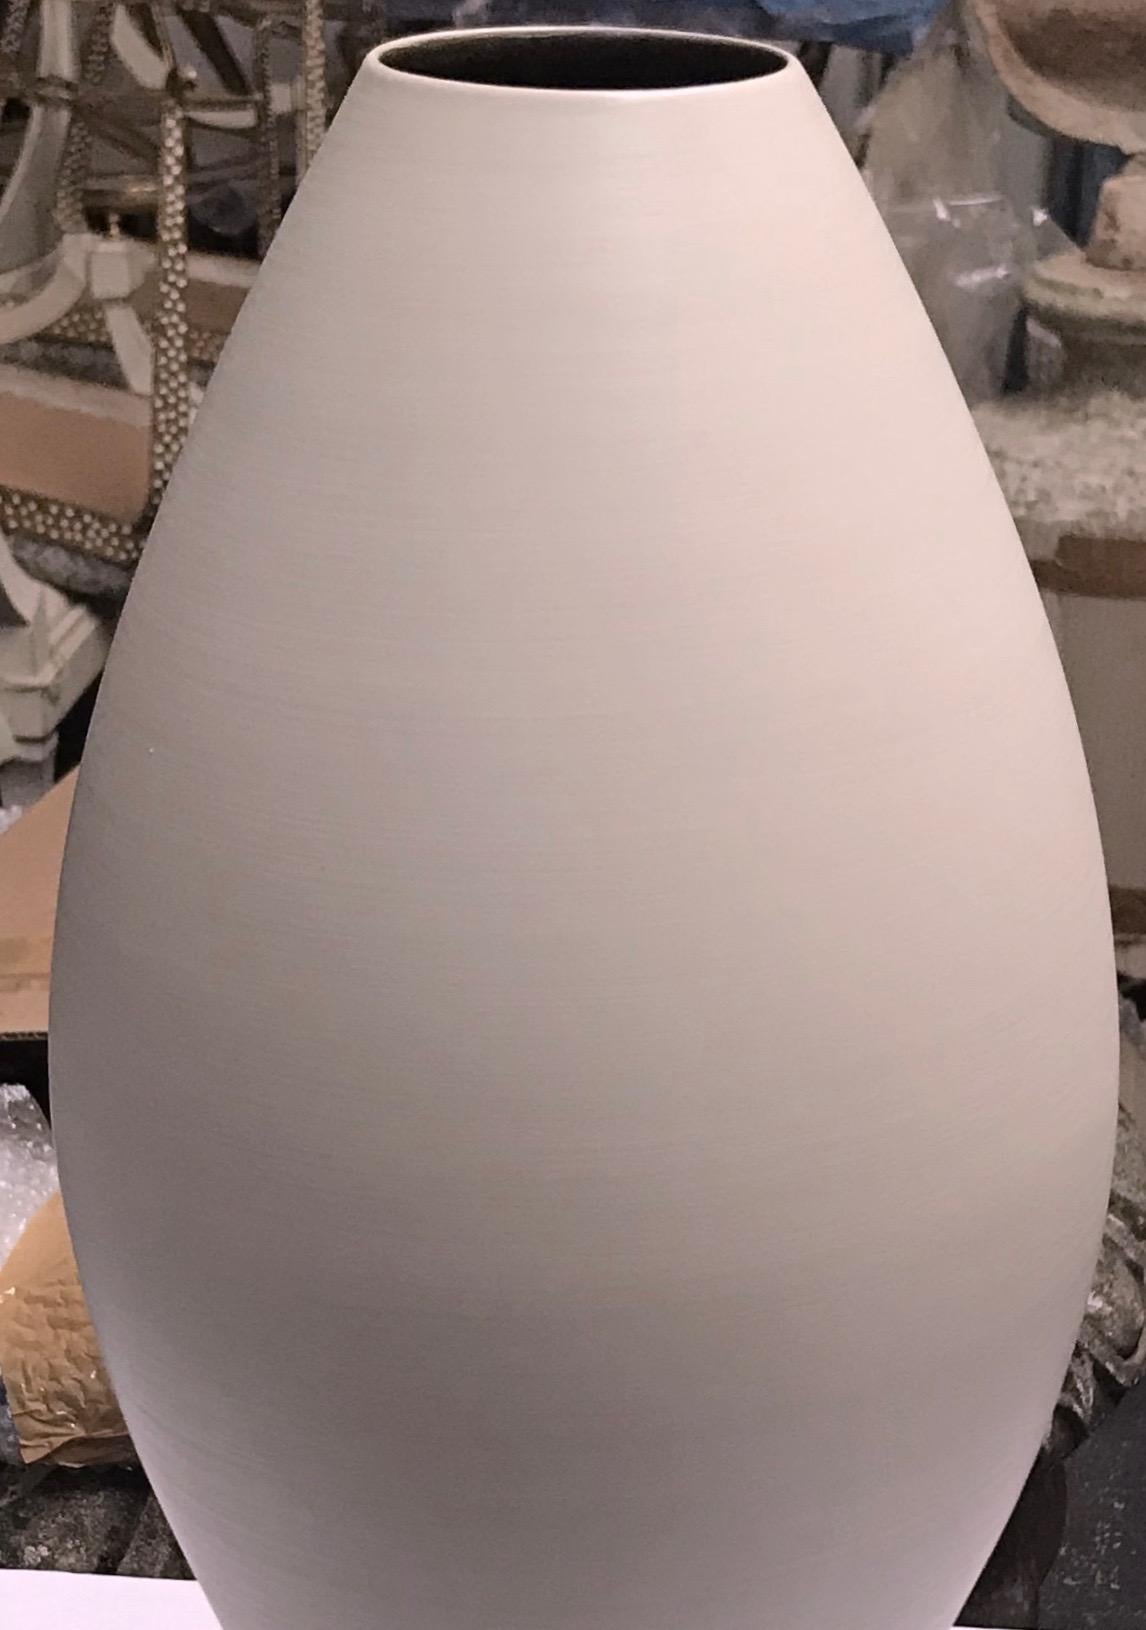 Zeitgenössische italienische Vase in großer geschwungener Form
Kein Hals
Handgefertigt.
Matte Oberfläche / Feinkeramik.
Die gleiche Form ist in Leinen extra groß, S5060, erhältlich, siehe Bilder #3 und #4.